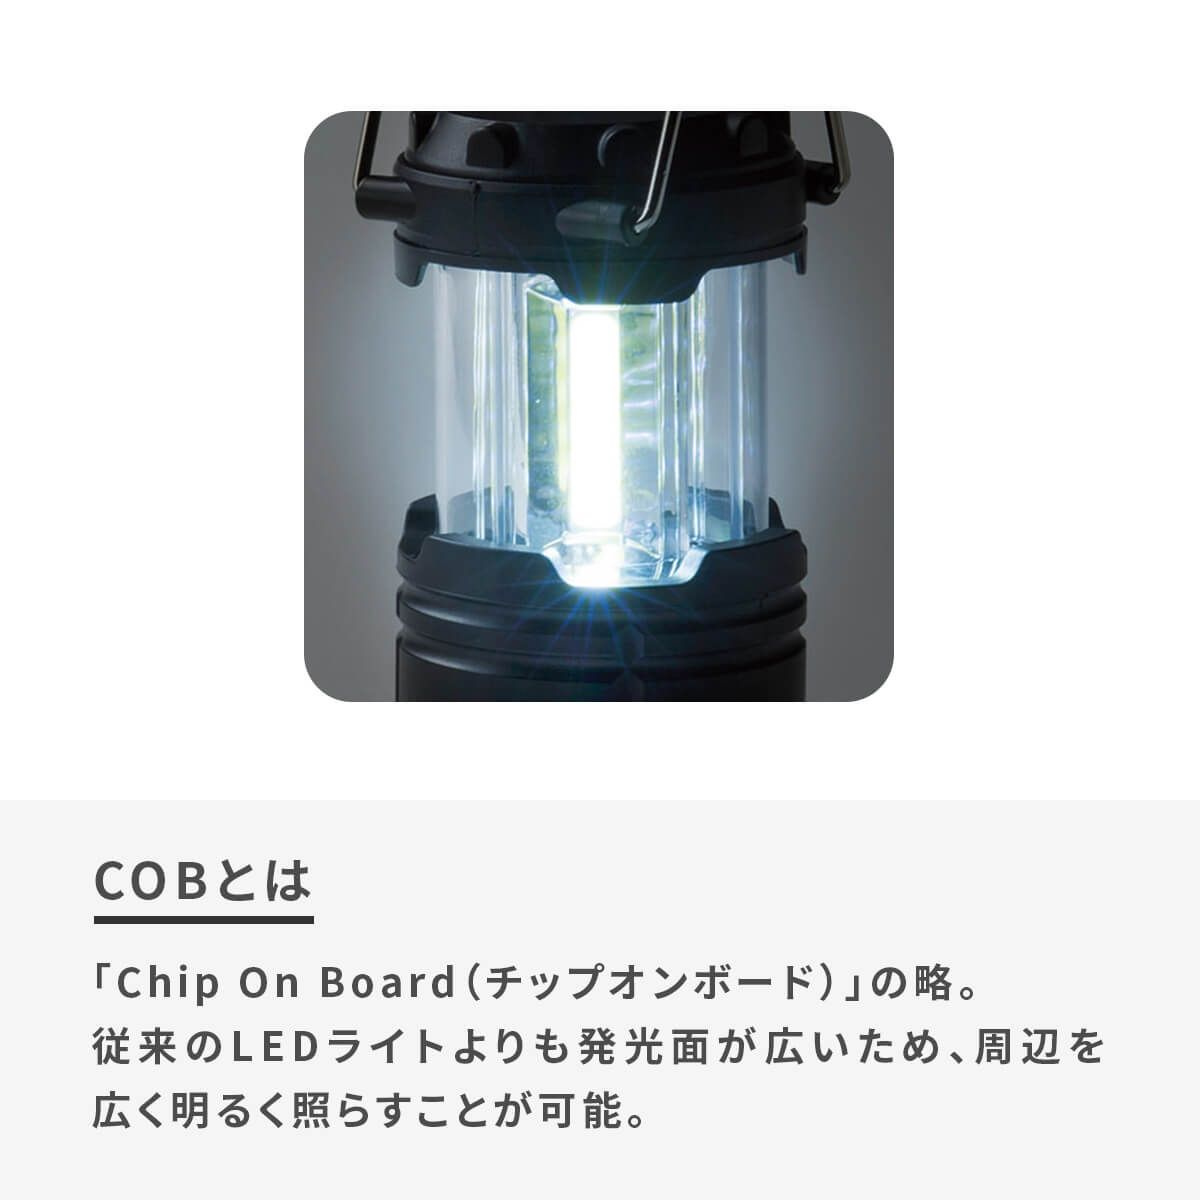 日本全国送料無料 COB ハイパワー ランタン ライト PL-31049